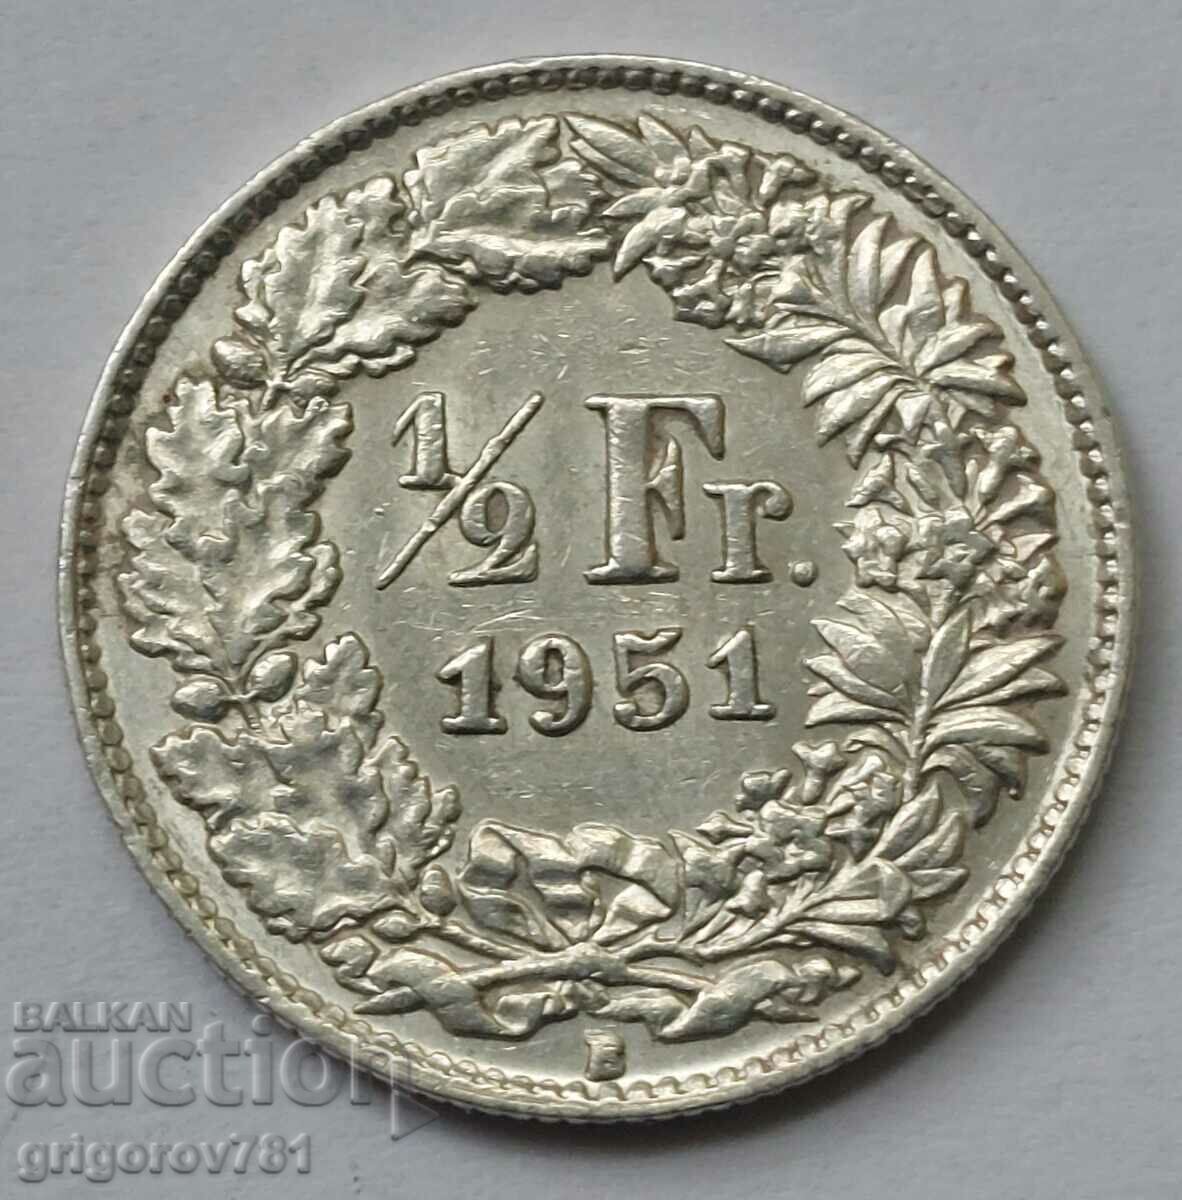 Ασημένιο φράγκο 1/2 Ελβετία 1951 Β - Ασημένιο νόμισμα #93